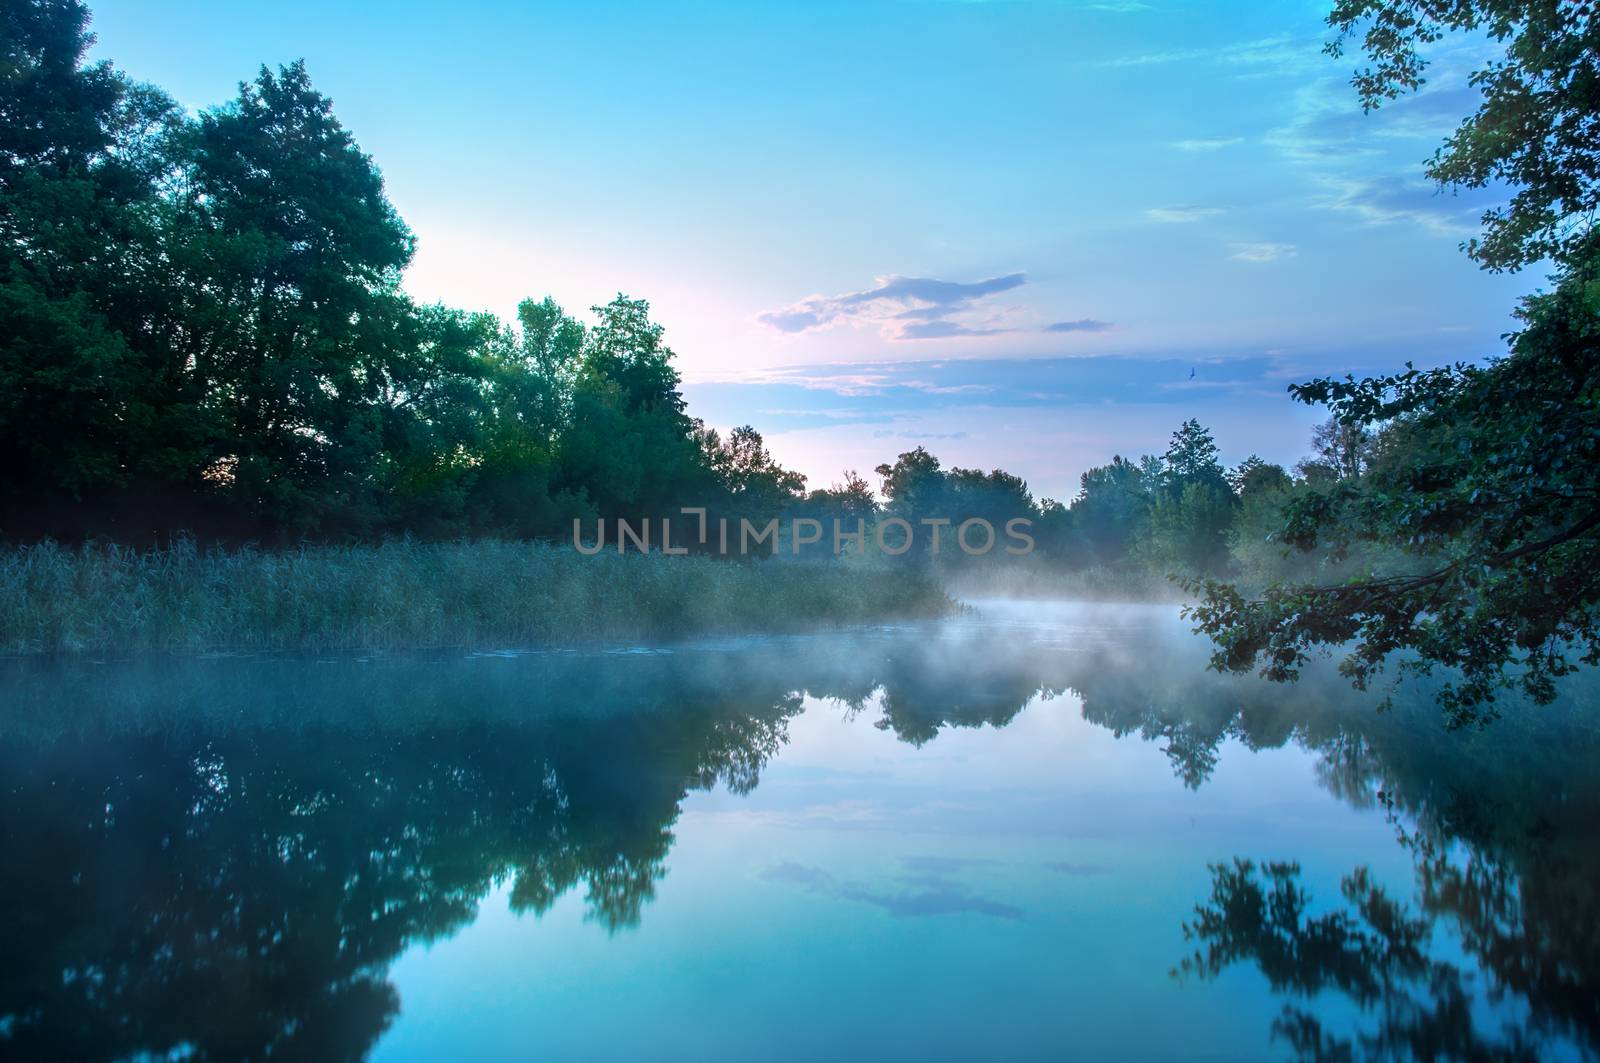 Morning fog on a calm river by Cipariss